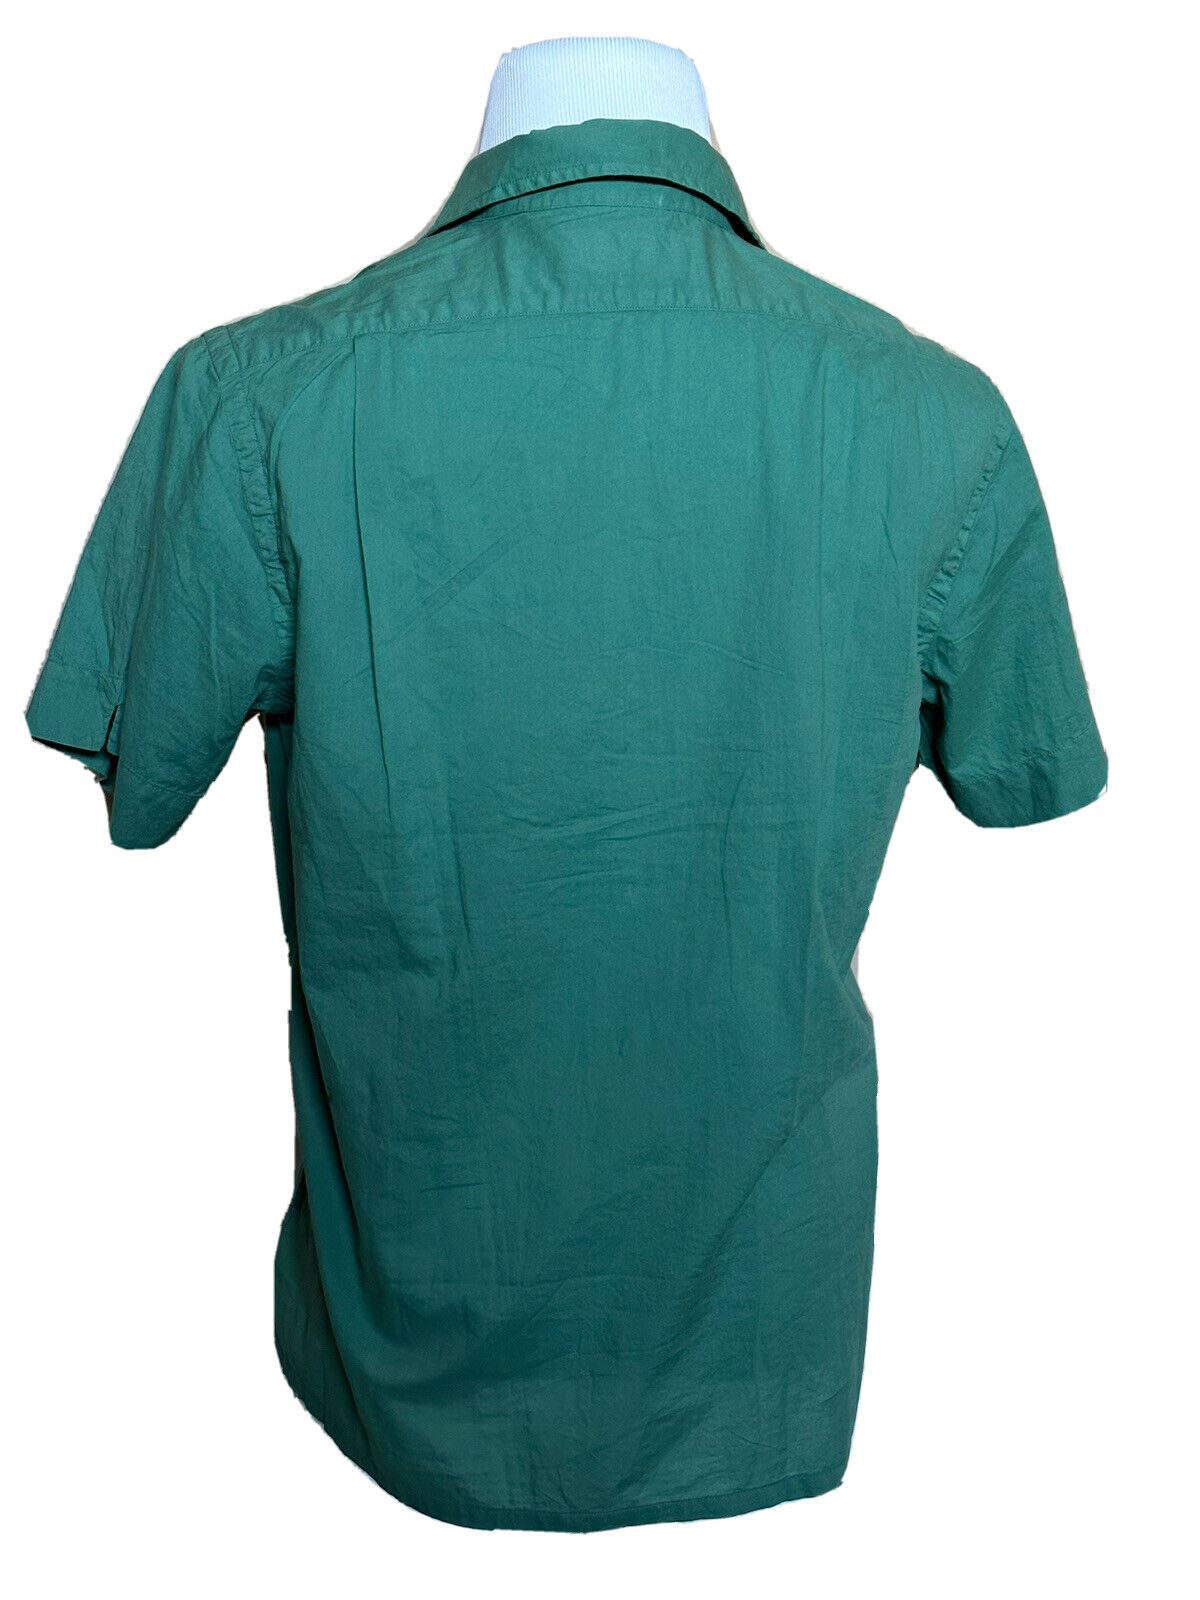 Мужская зеленая классическая рубашка с коротким рукавом NWT Polo Ralph Lauren среднего размера, производство Индия